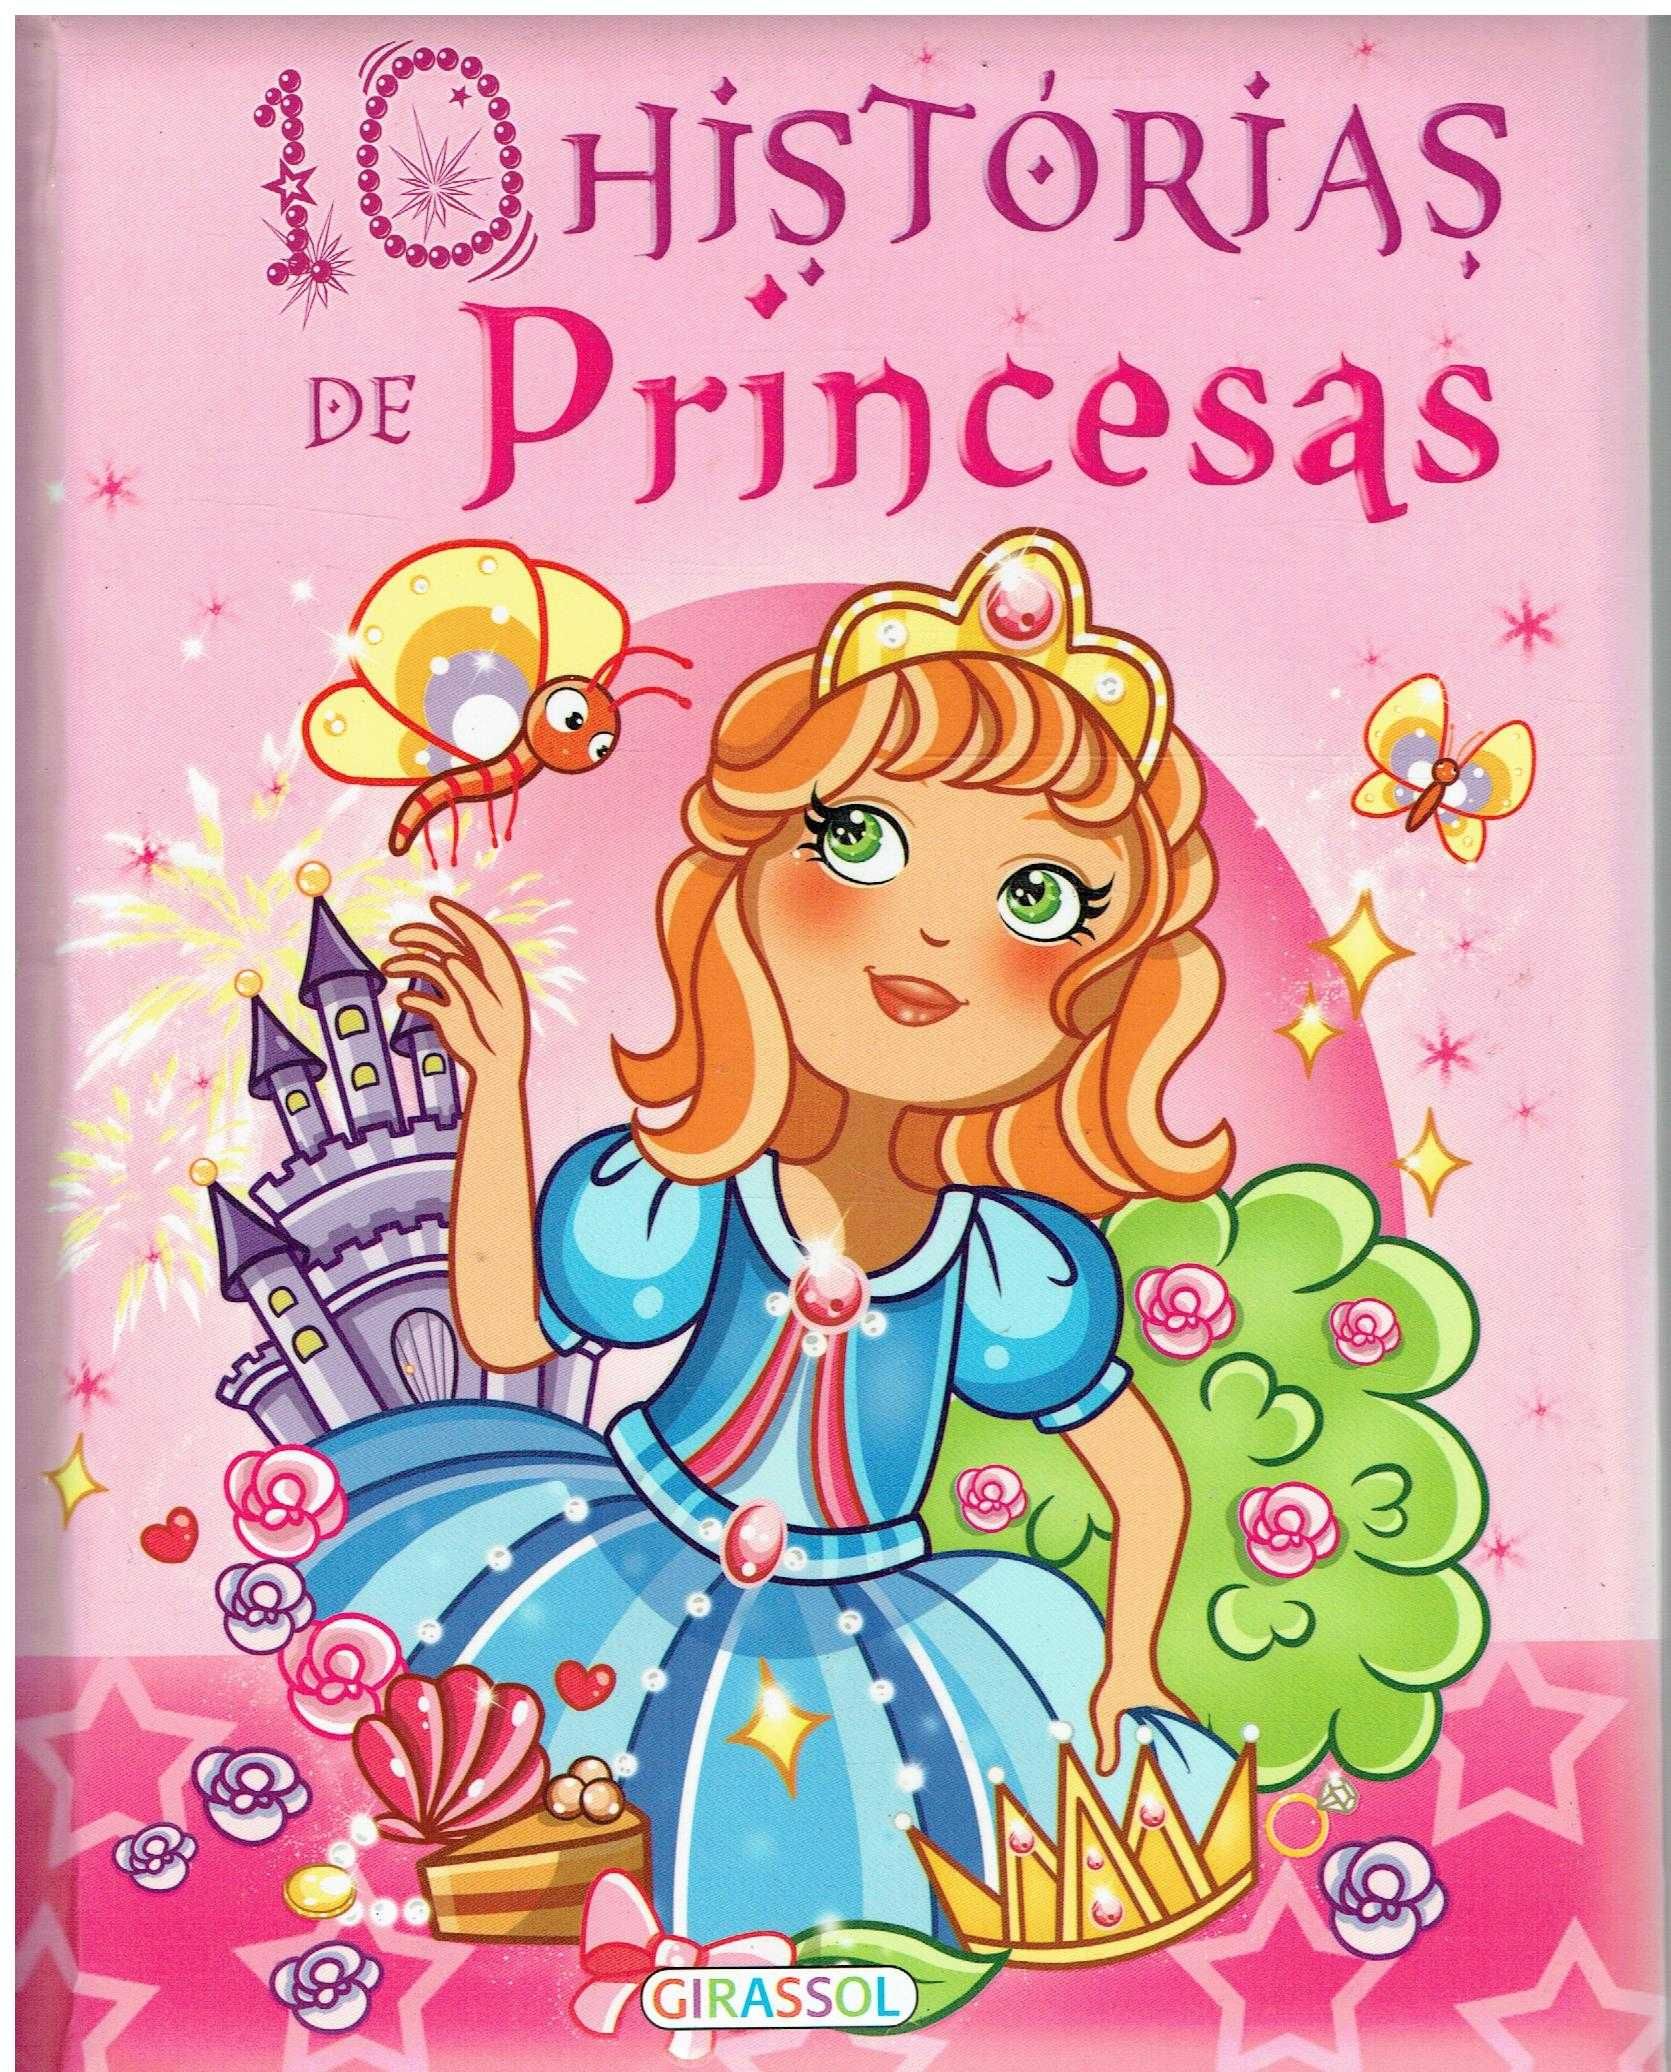 5389

10 Histórias de Princesas

editor: Girassol